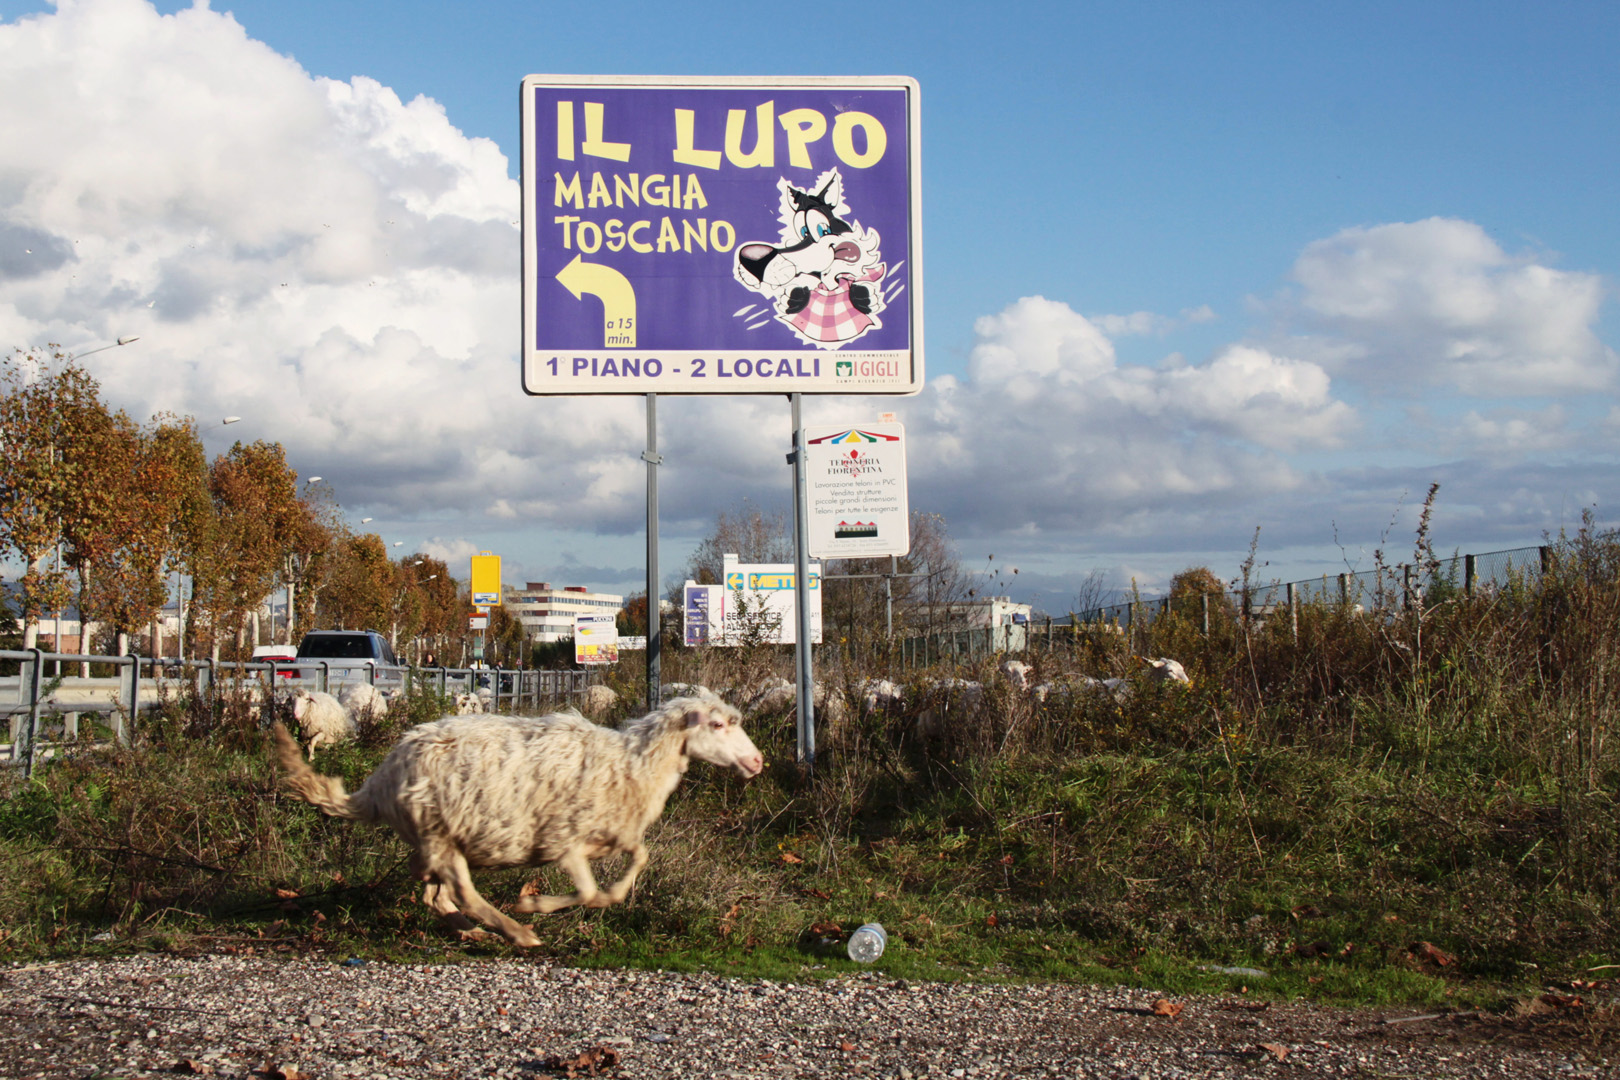 Fi- Osmannoro -
La pecorella scappa alla vista del Lupo 